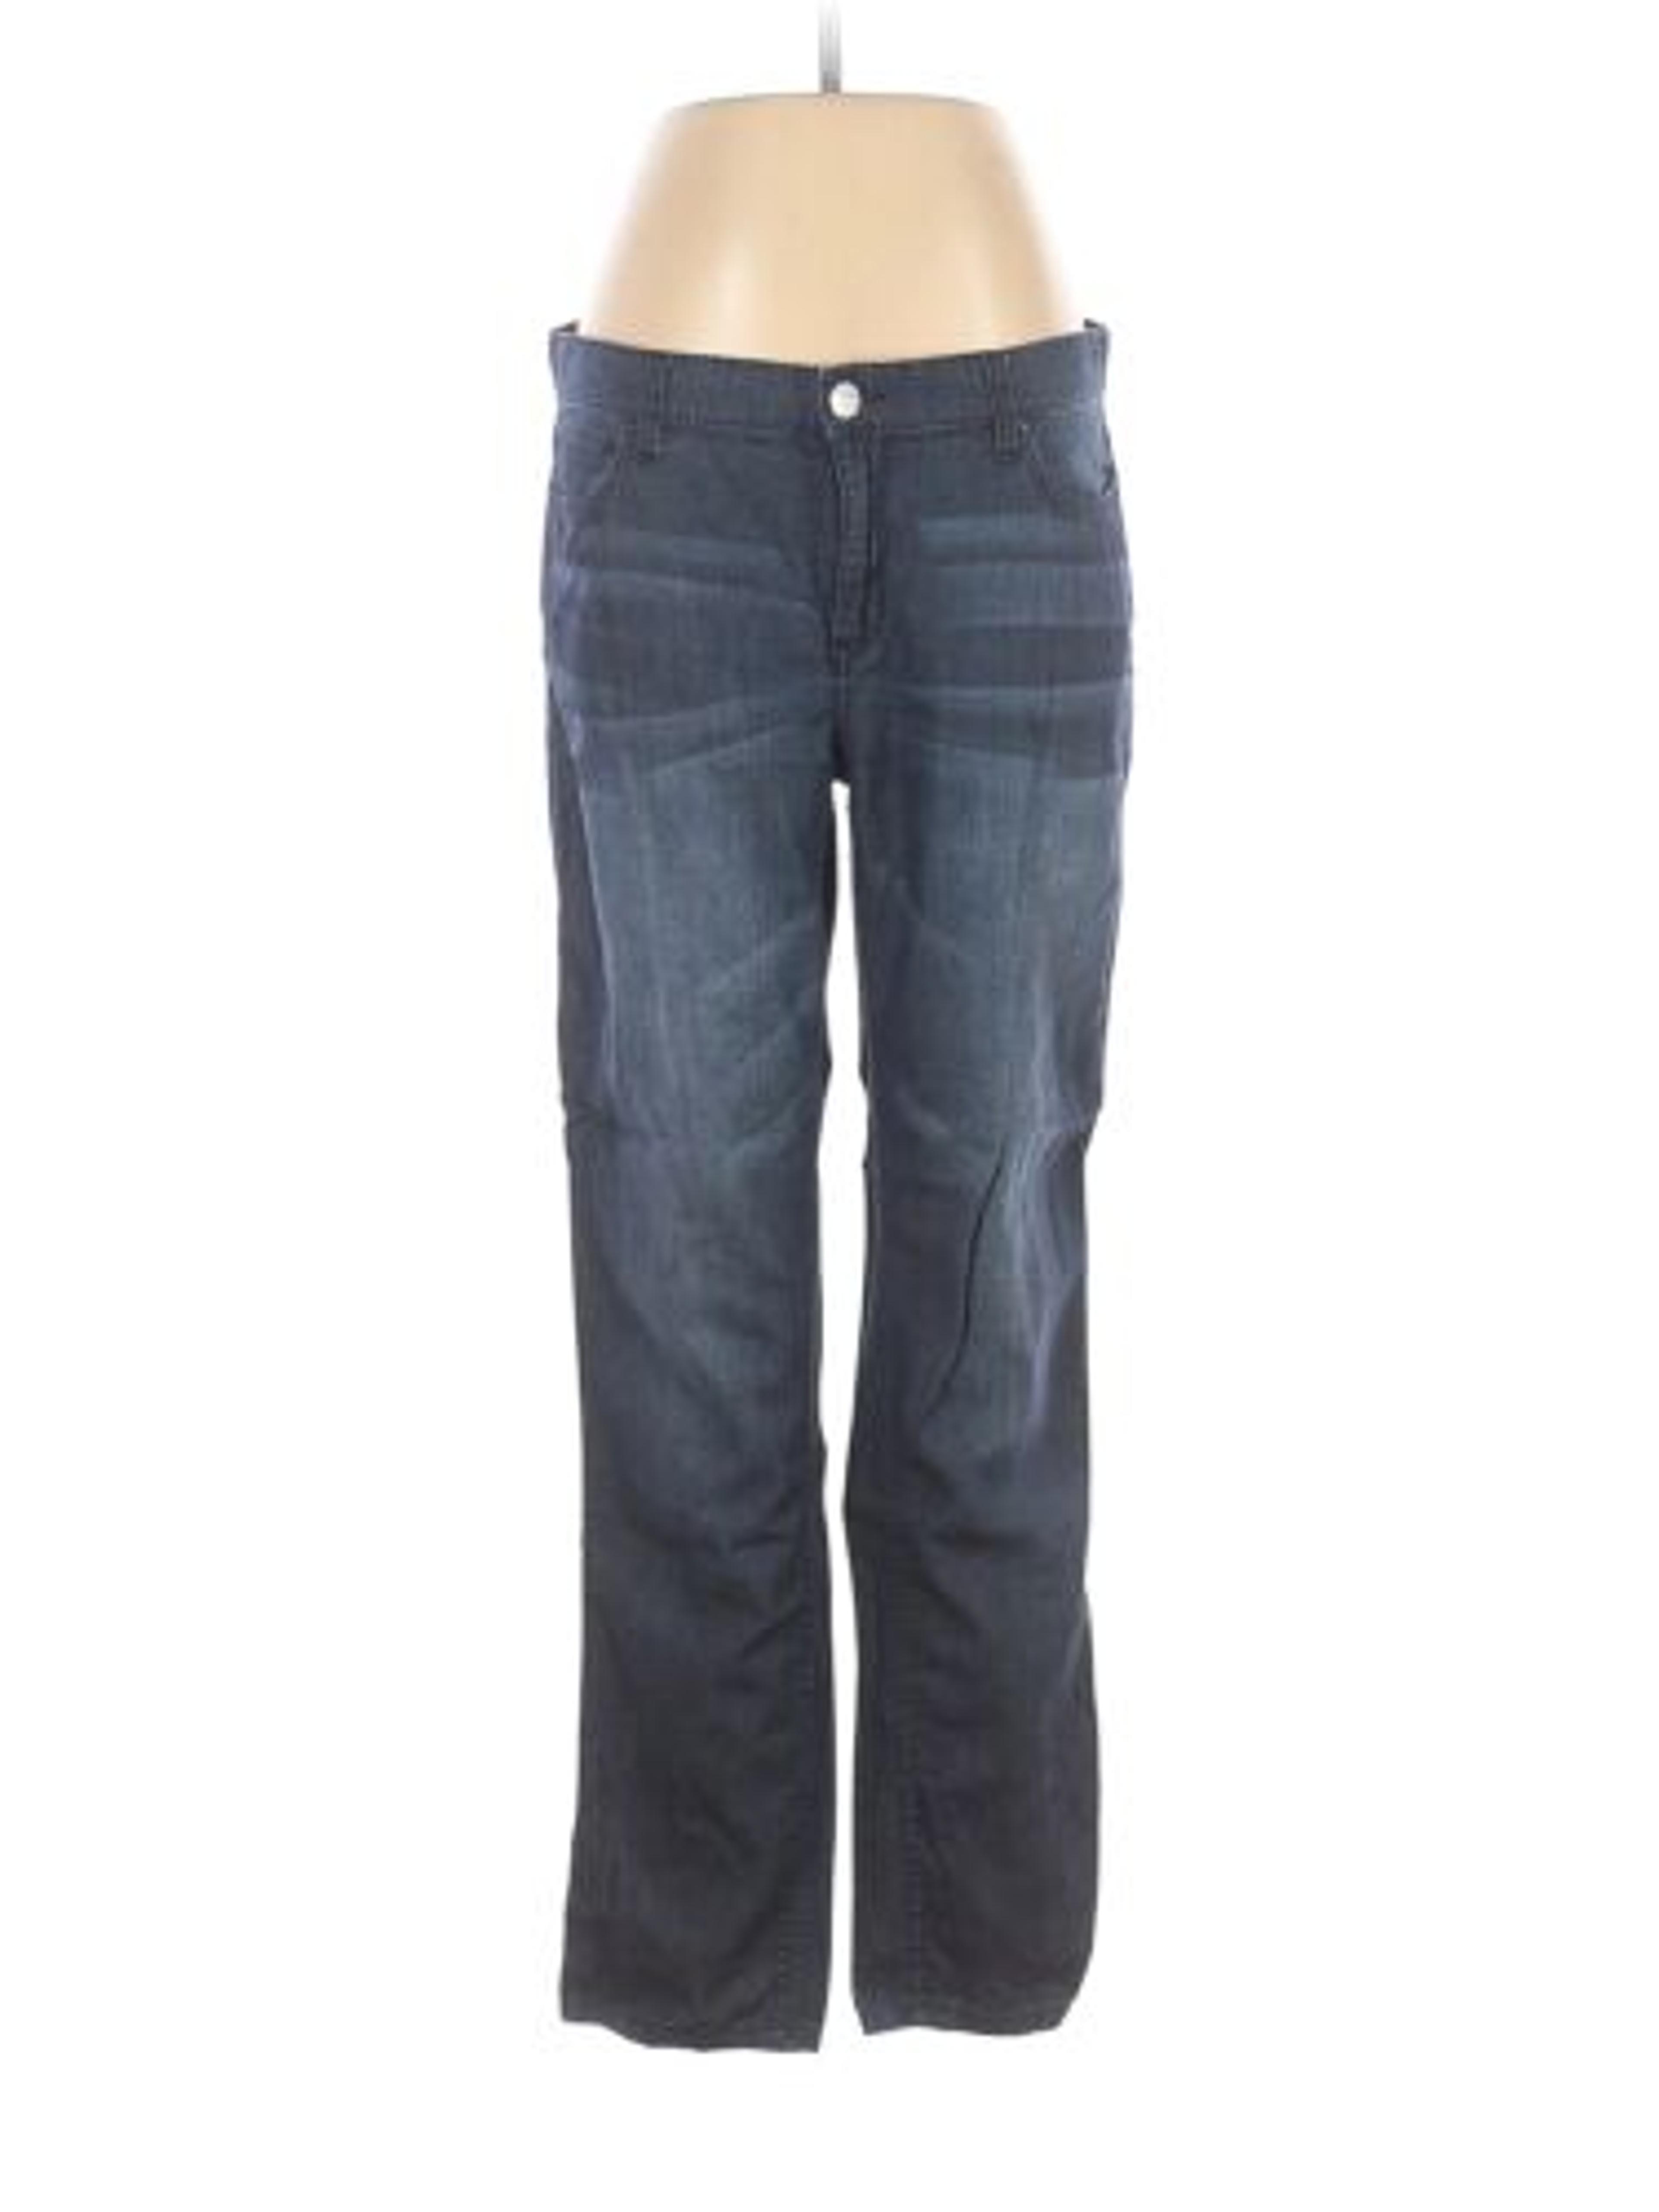 DKNY Jeans Women Blue Jeans 8 - Gem